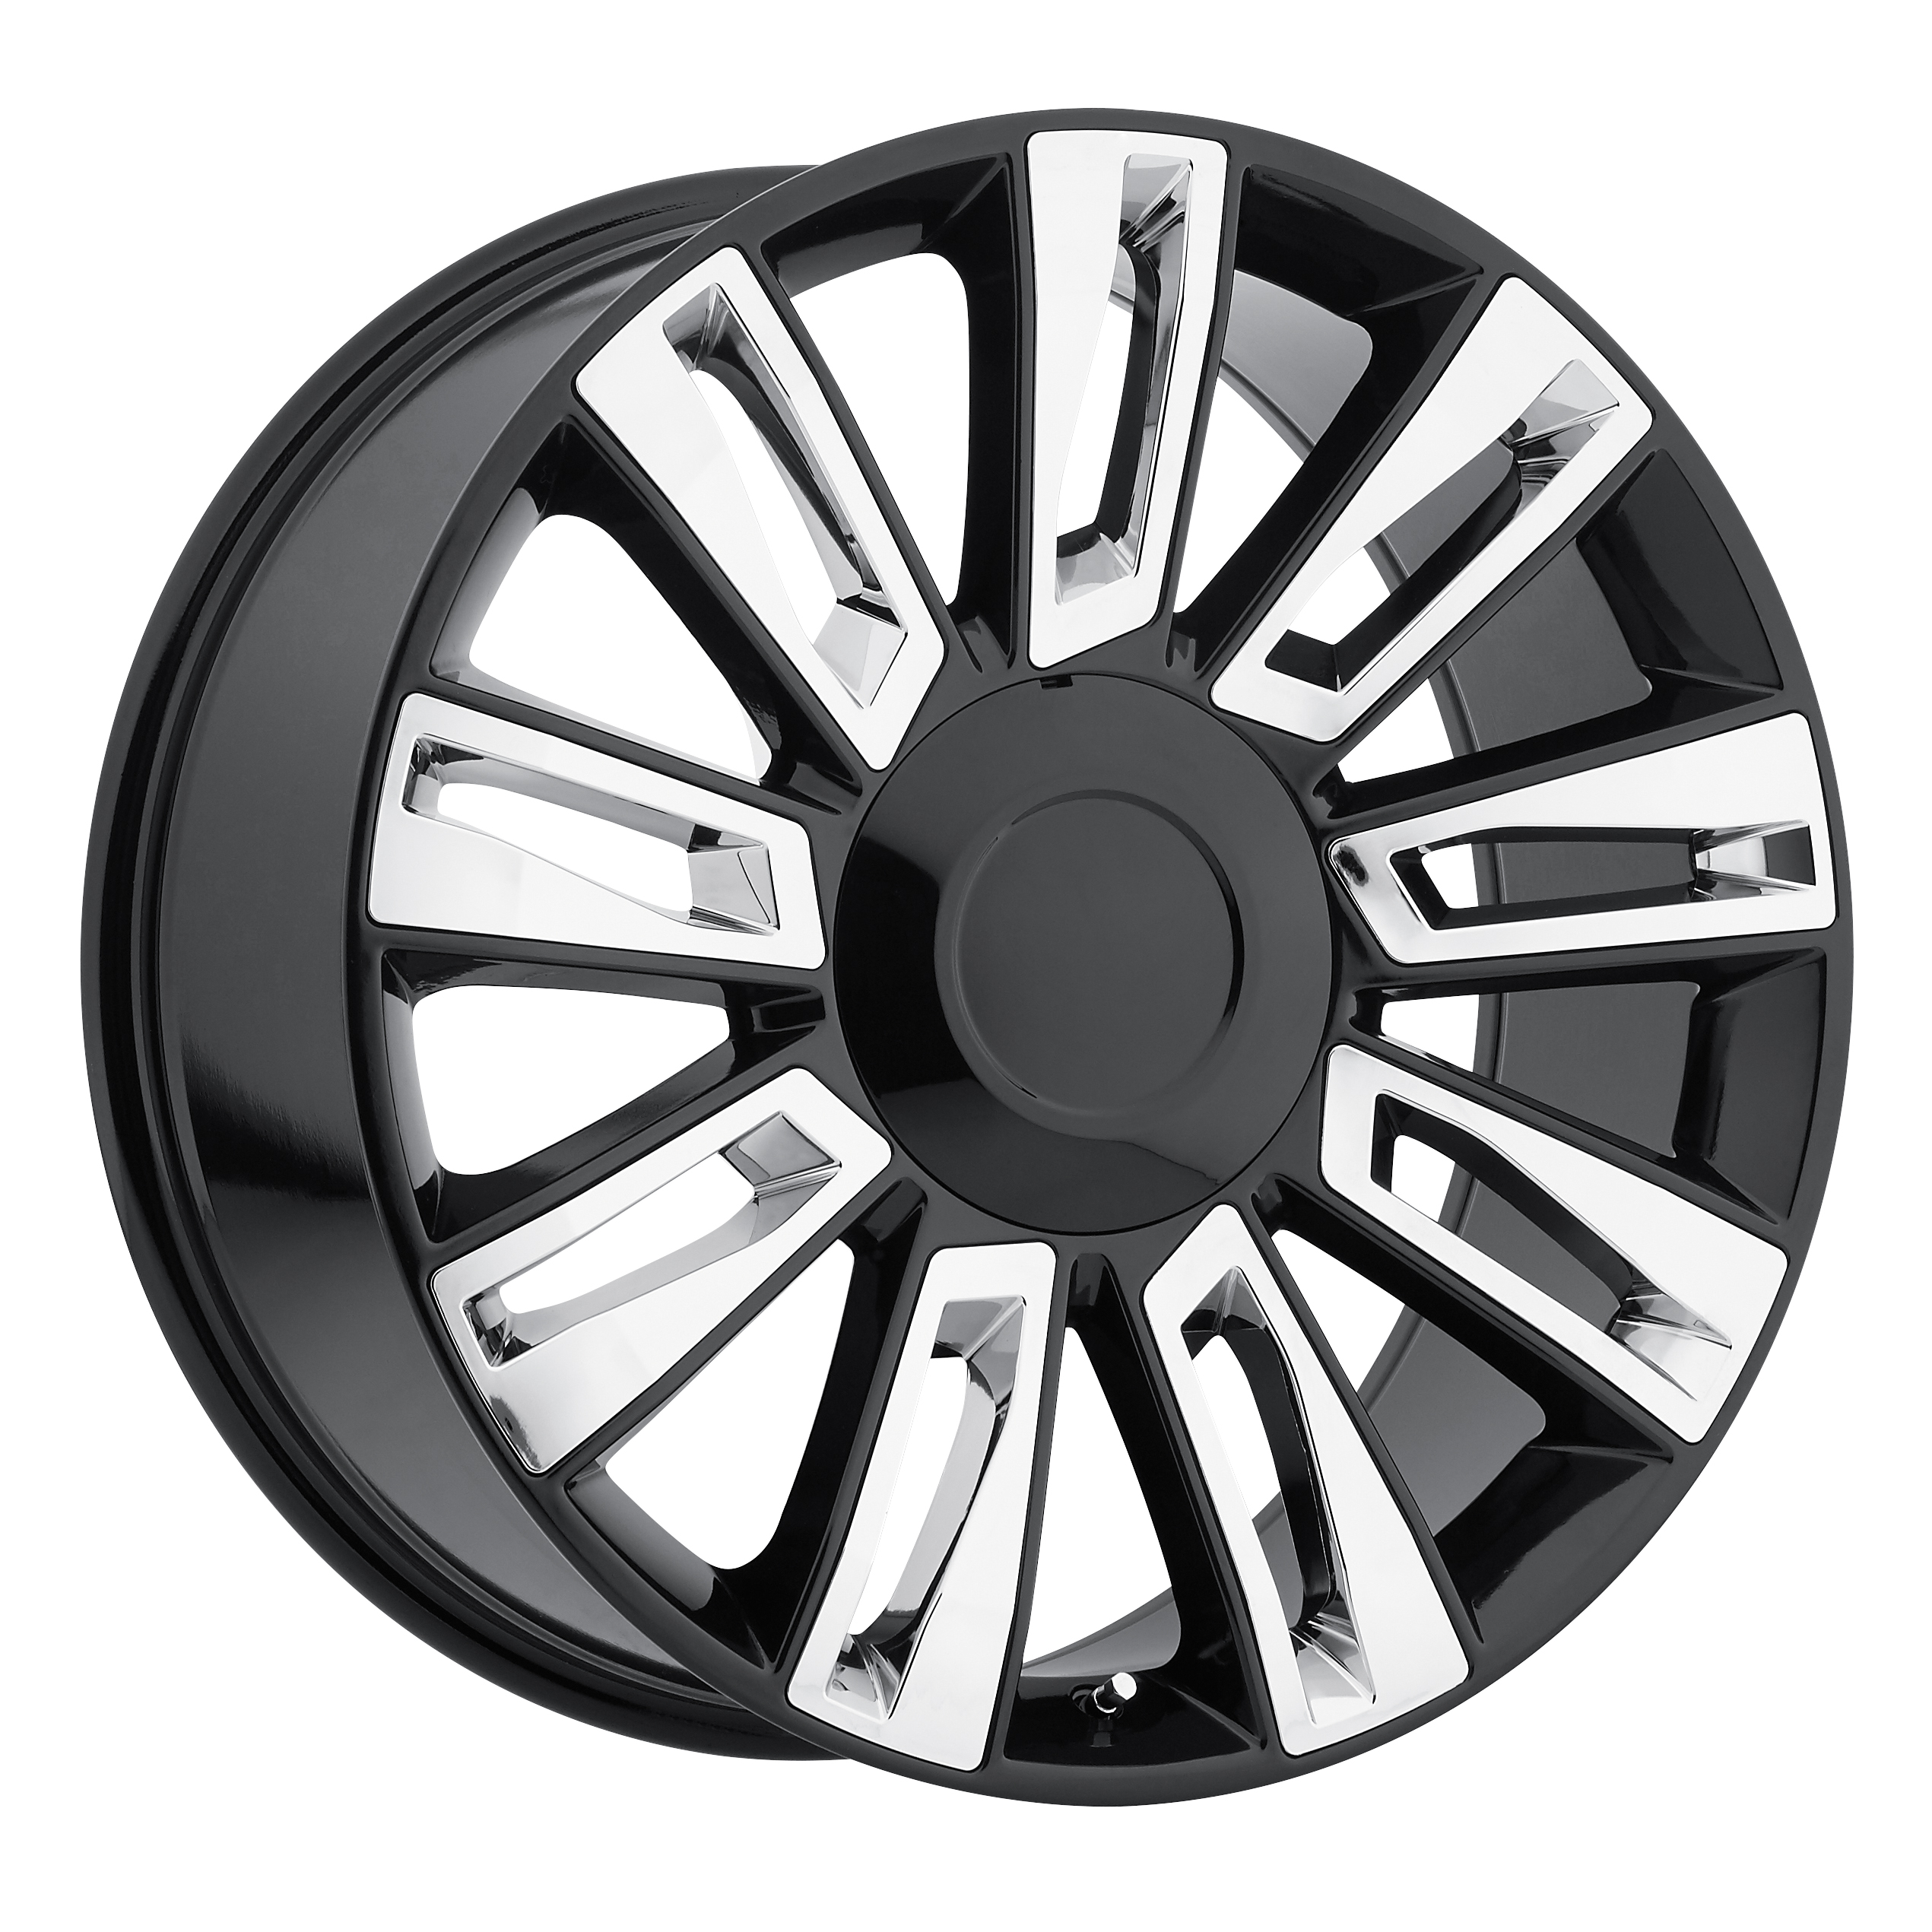 2015 Cadillac Escalade Option 3 Black w/ Chrome Inserts Replicas